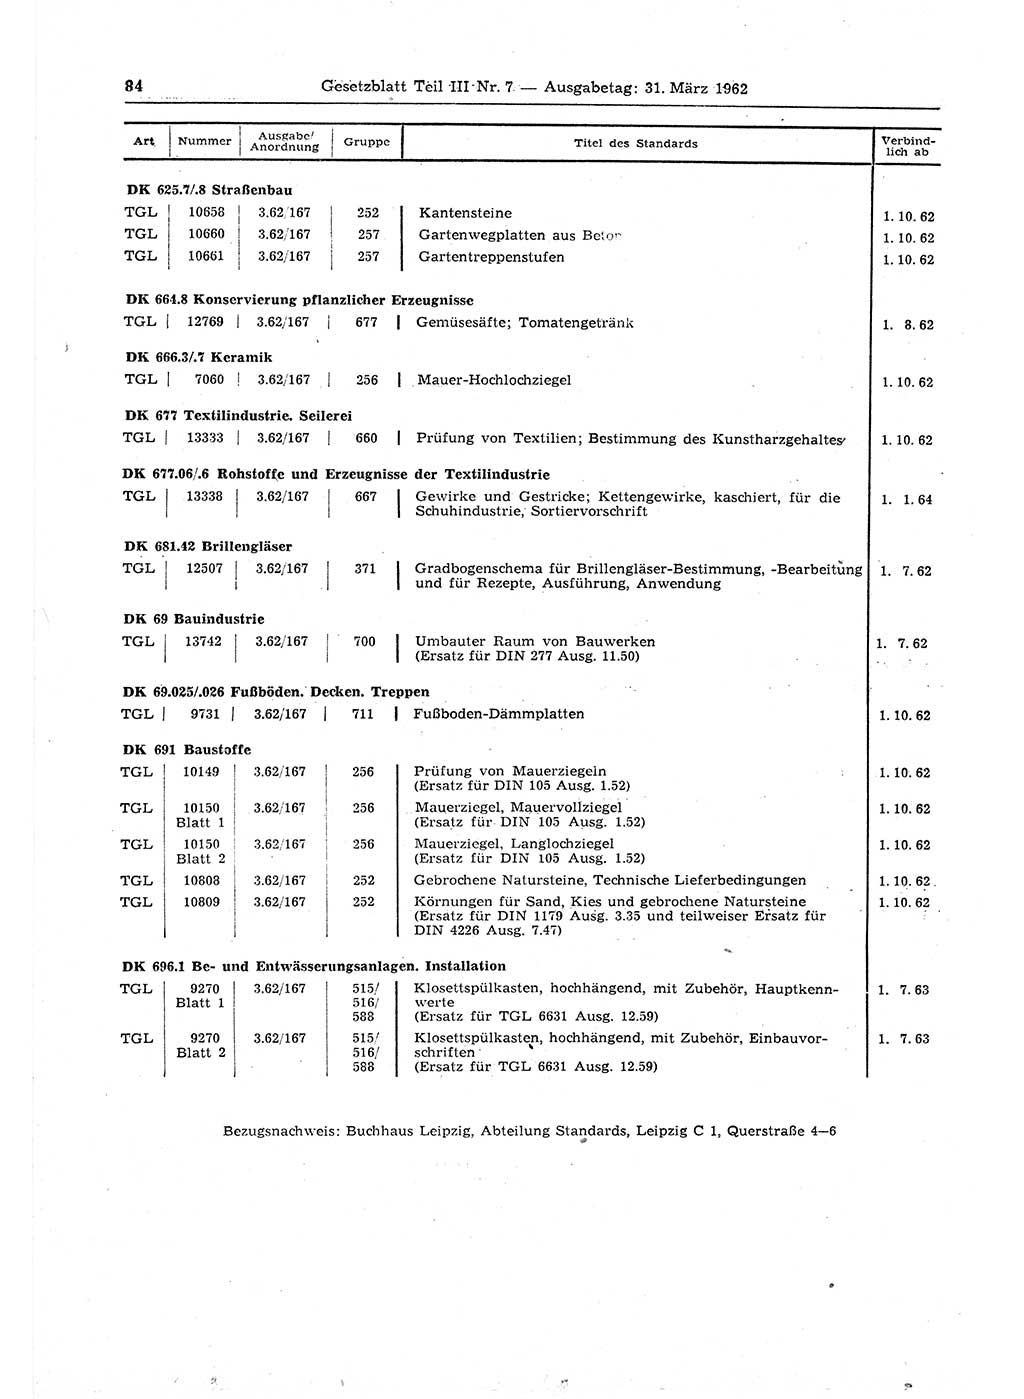 Gesetzblatt (GBl.) der Deutschen Demokratischen Republik (DDR) Teil ⅠⅠⅠ 1962, Seite 84 (GBl. DDR ⅠⅠⅠ 1962, S. 84)